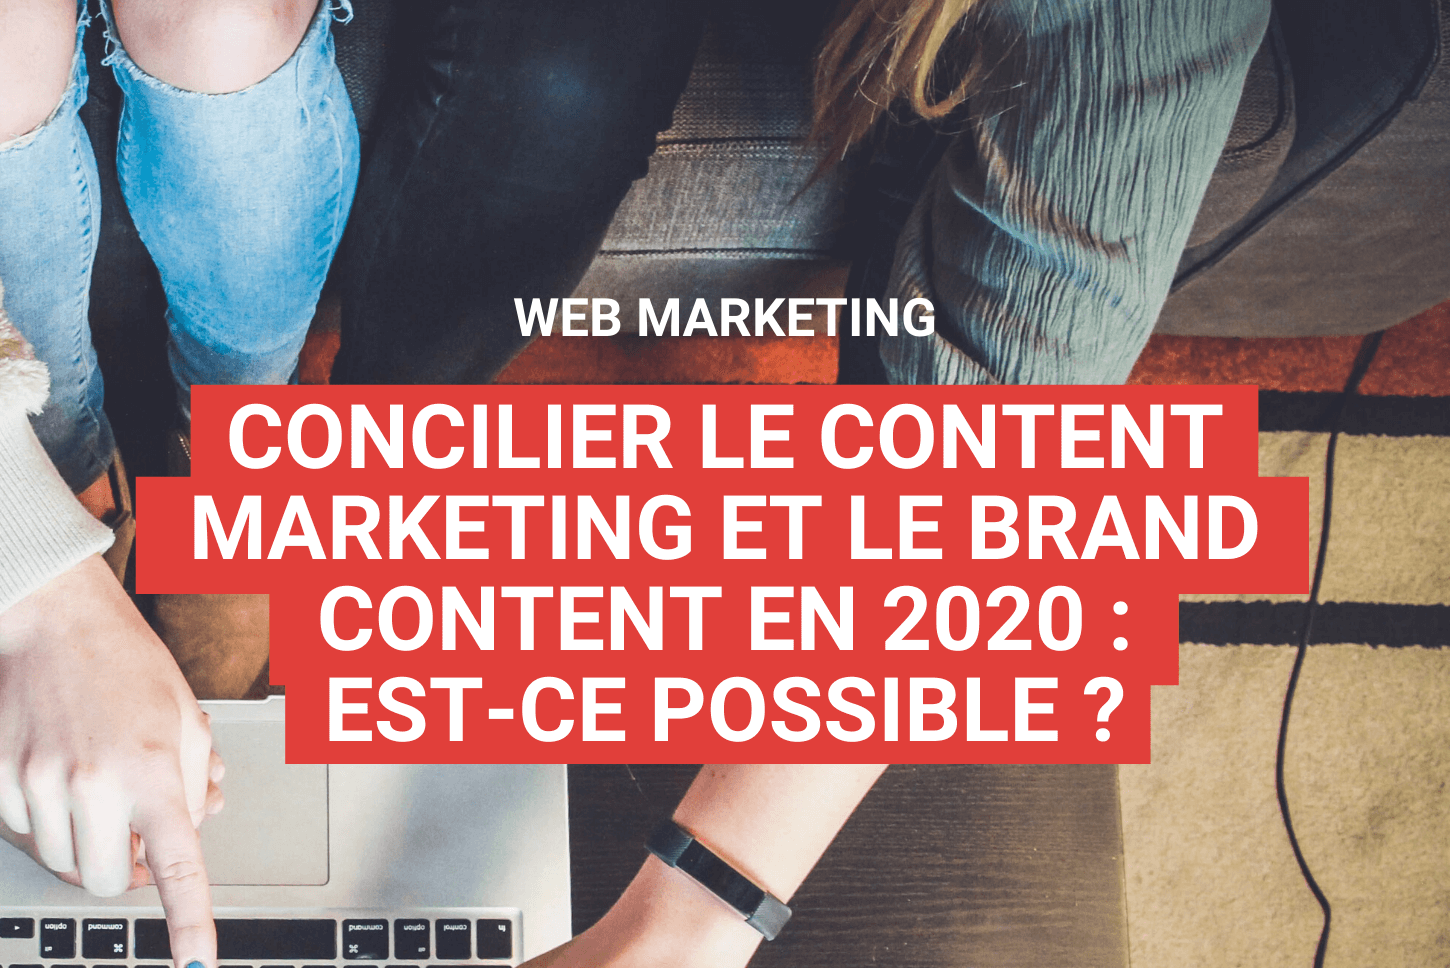 Concilier le content marketing et le brand content en 2020 : est-ce possible ?